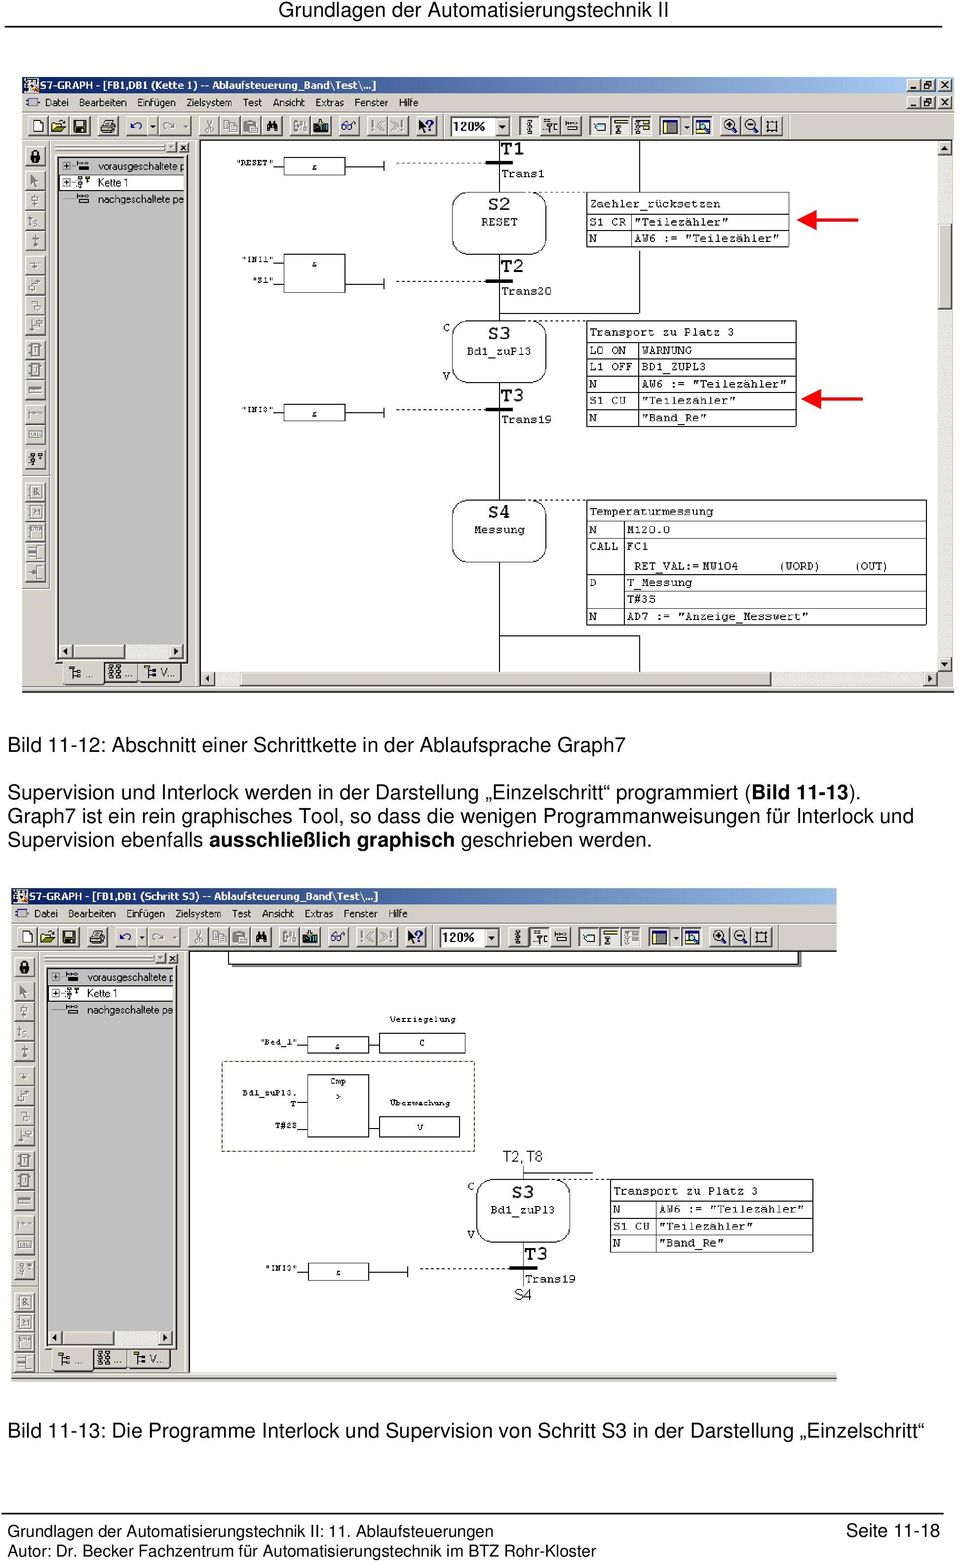 Graph7 ist ein rein graphisches Tool, so dass die wenigen Programmanweisungen für Interlock und Supervision ebenfalls